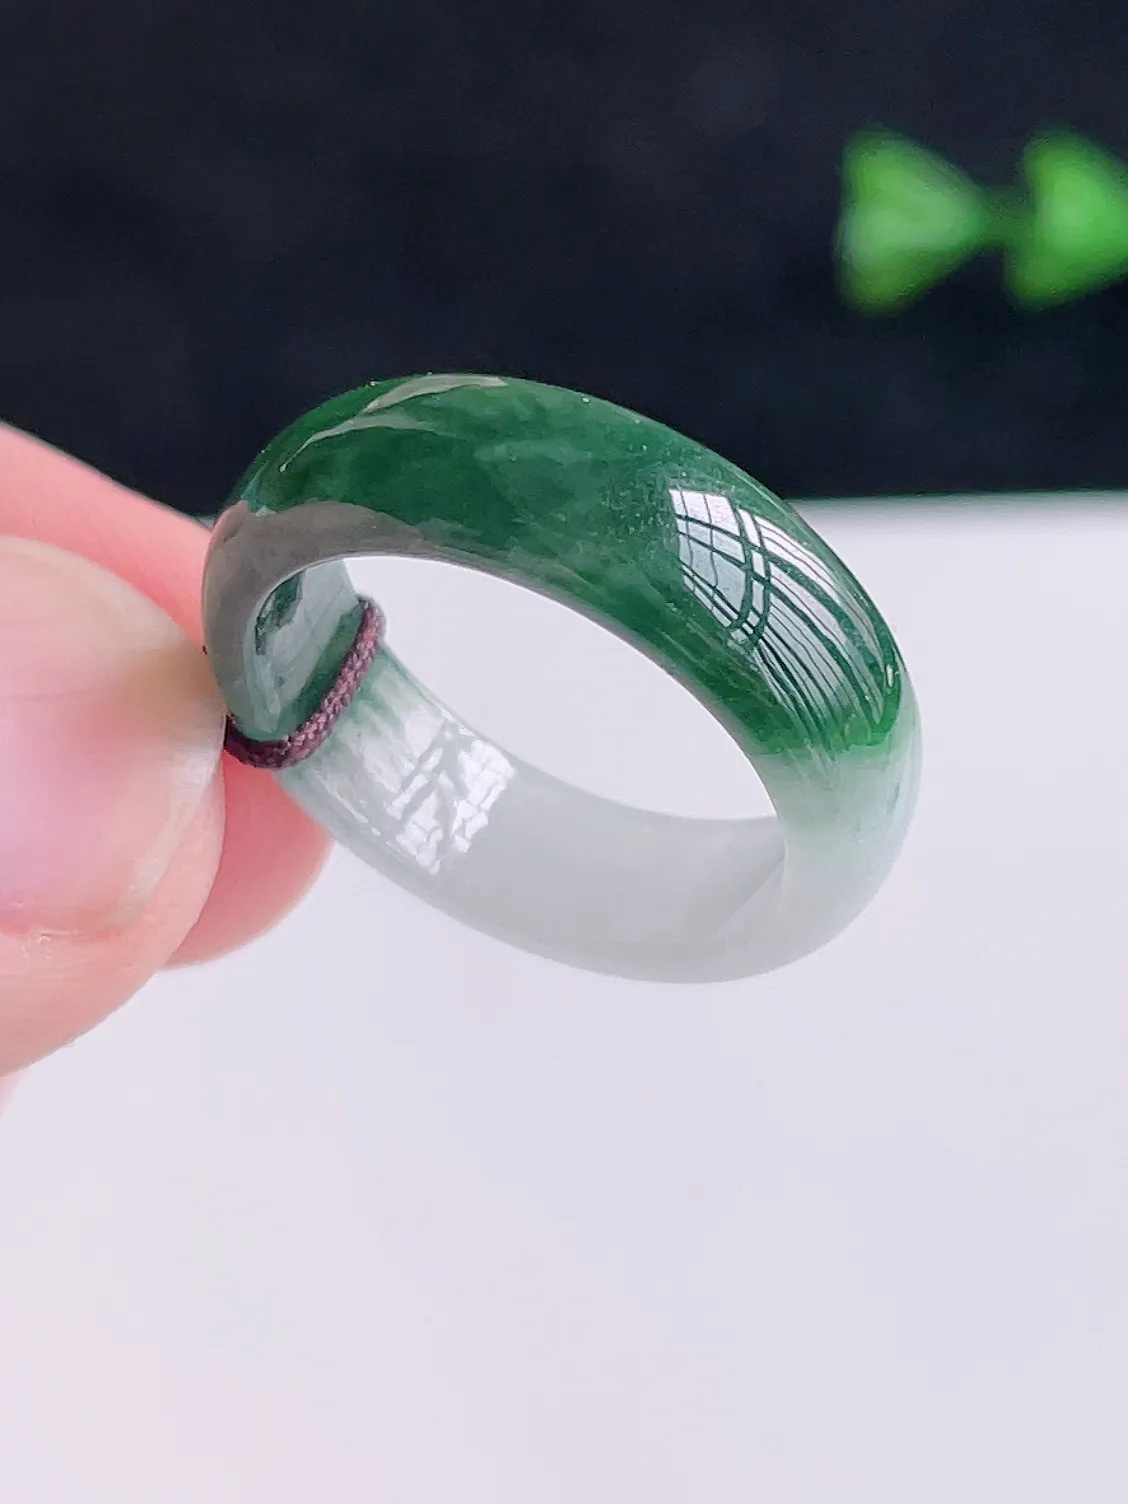 A货翡翠冰润绿色翡翠戒指  颜色清新 半山半水 艳丽漂亮，佩戴优雅大方，AK0109   （请在自然光欣赏）尺寸18.5-7-2.8mm  19号